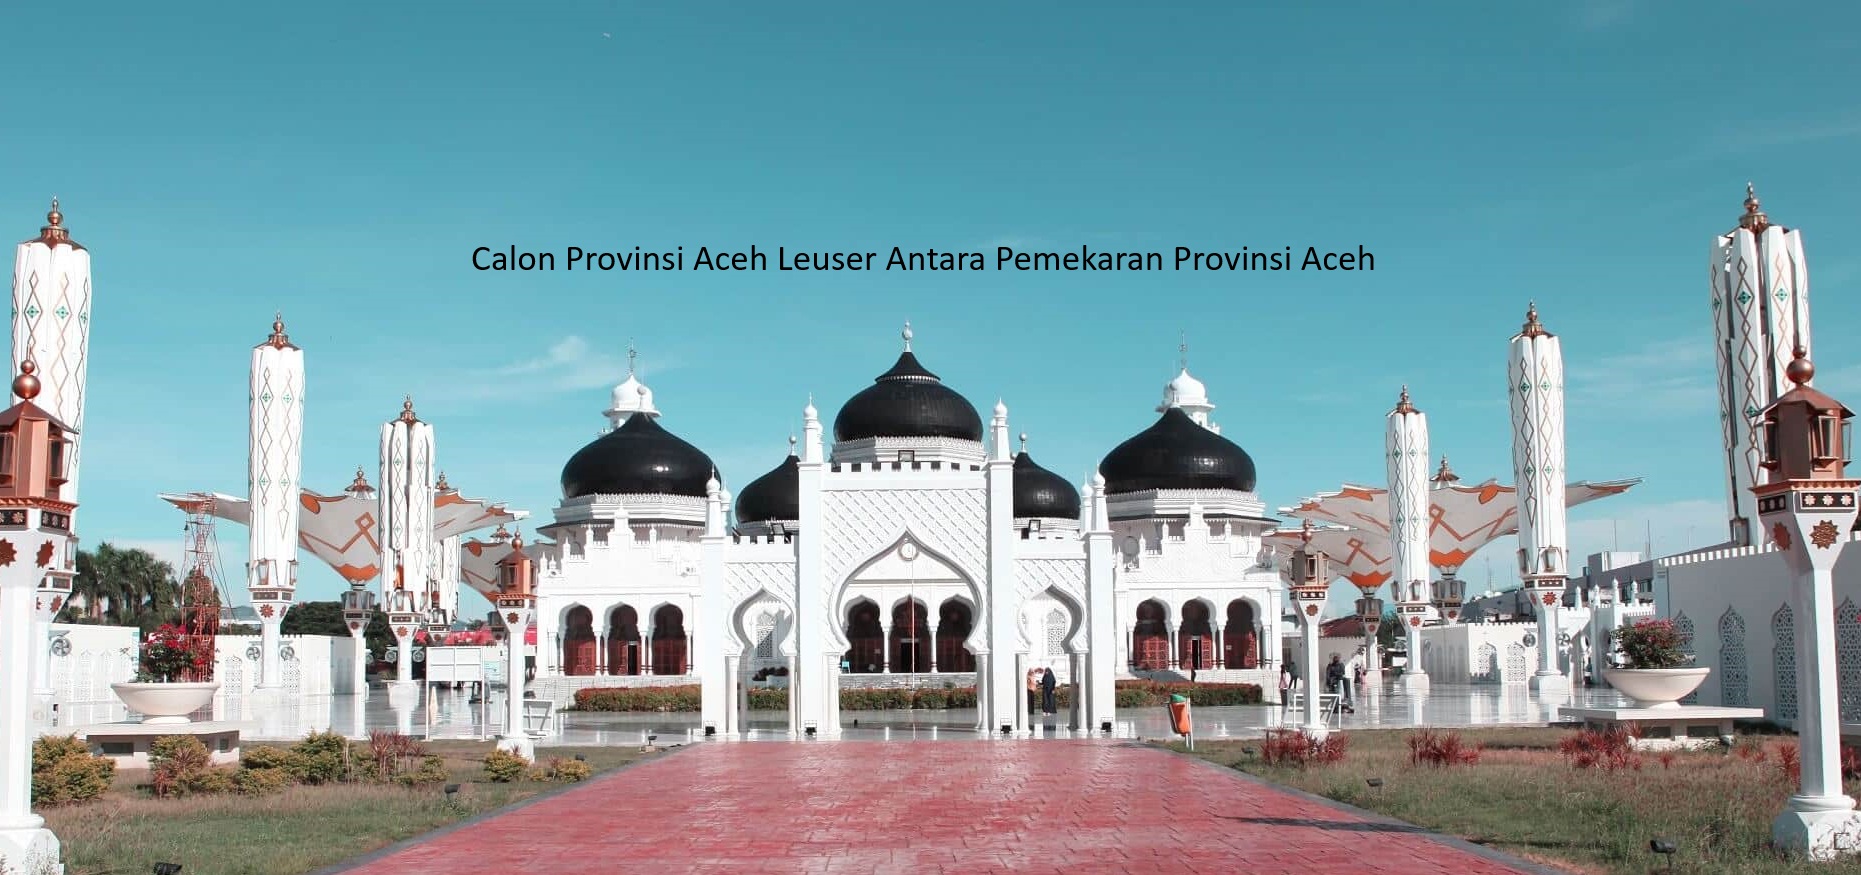 Pemekaran Provinsi Aceh Bentuk Dua Provinsi Baru, Aceh Lauser Antara dan Aceh Barat Selatan